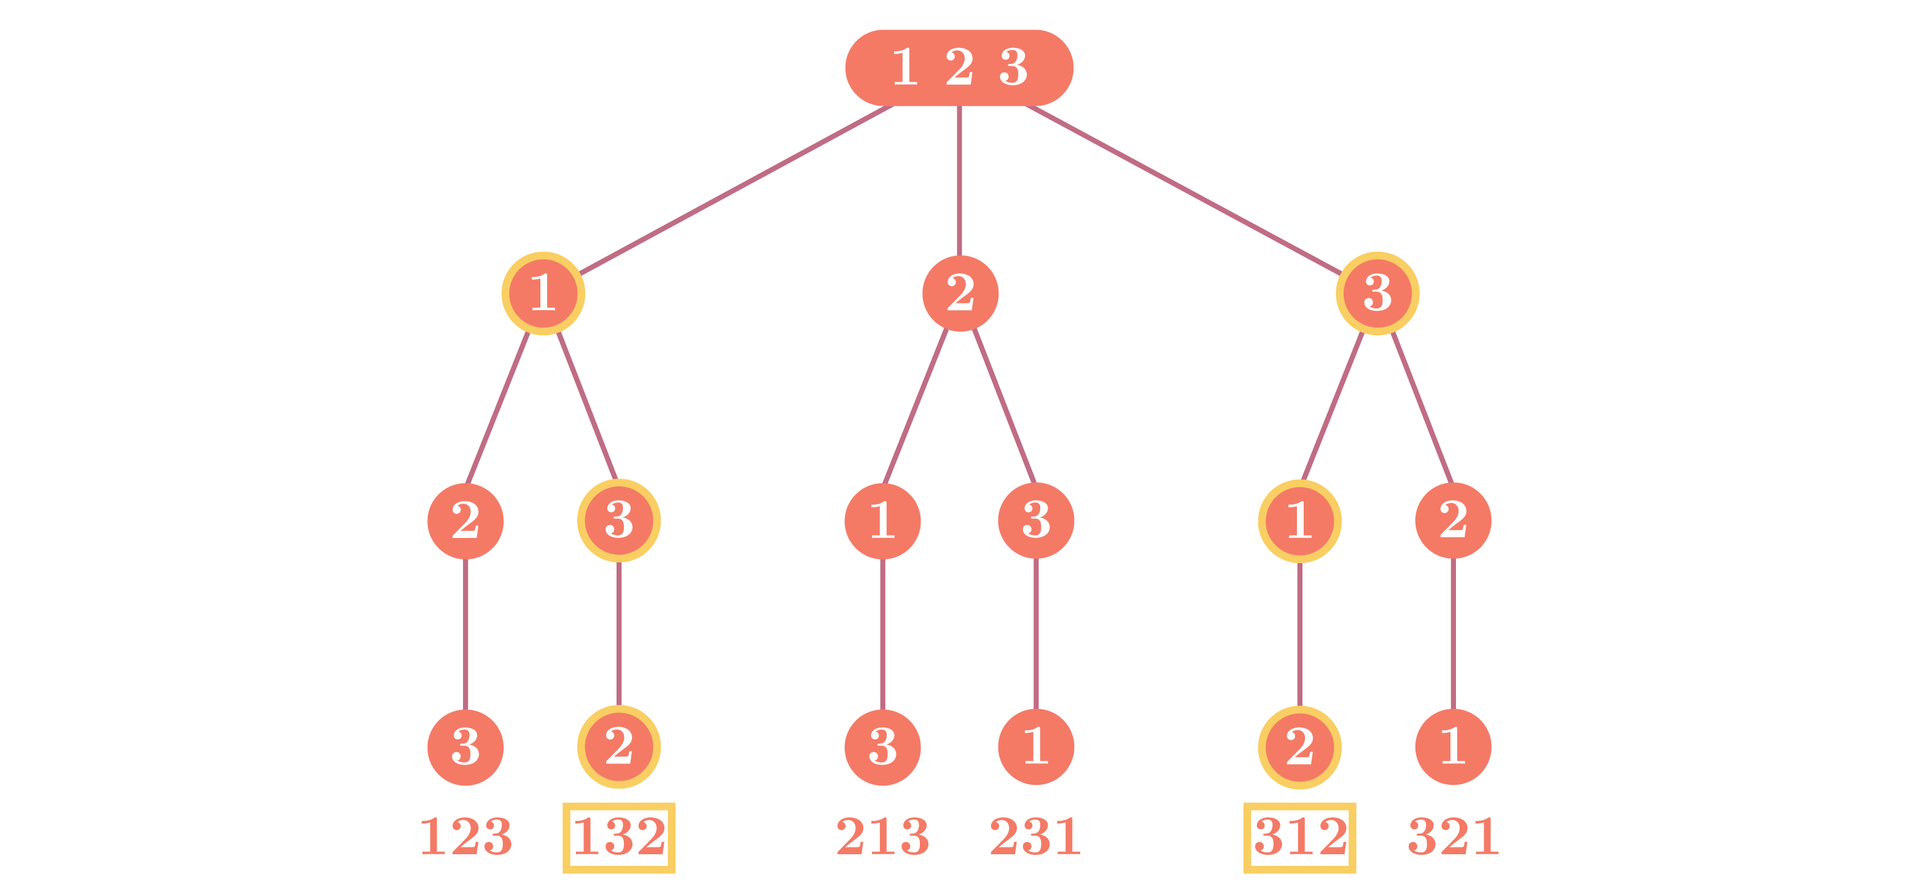 Ilustracja przedstawia drzewo decyzyjne. Zaczyna się od 123 które rozdziela się na trzy gałęzie 1, 2 i trzy. Gałąź jeden rozdziela się na 2 oraz 3, które kolejno rozdzielają się na 3 oraz dwa. Gałąź 2 rozdziela się na gałęzie 1 oraz 3, które kolejno rozdzielają się na 3 oraz jeden. Gałąź 3 rozdziela się na 1 oraz 2, które kolejno rozdzielają się na gałęzie 2 oraz jeden.  Powstaje sześć zdarzeń elementarnych. 123, 132, 213, 231, 312 oraz 321